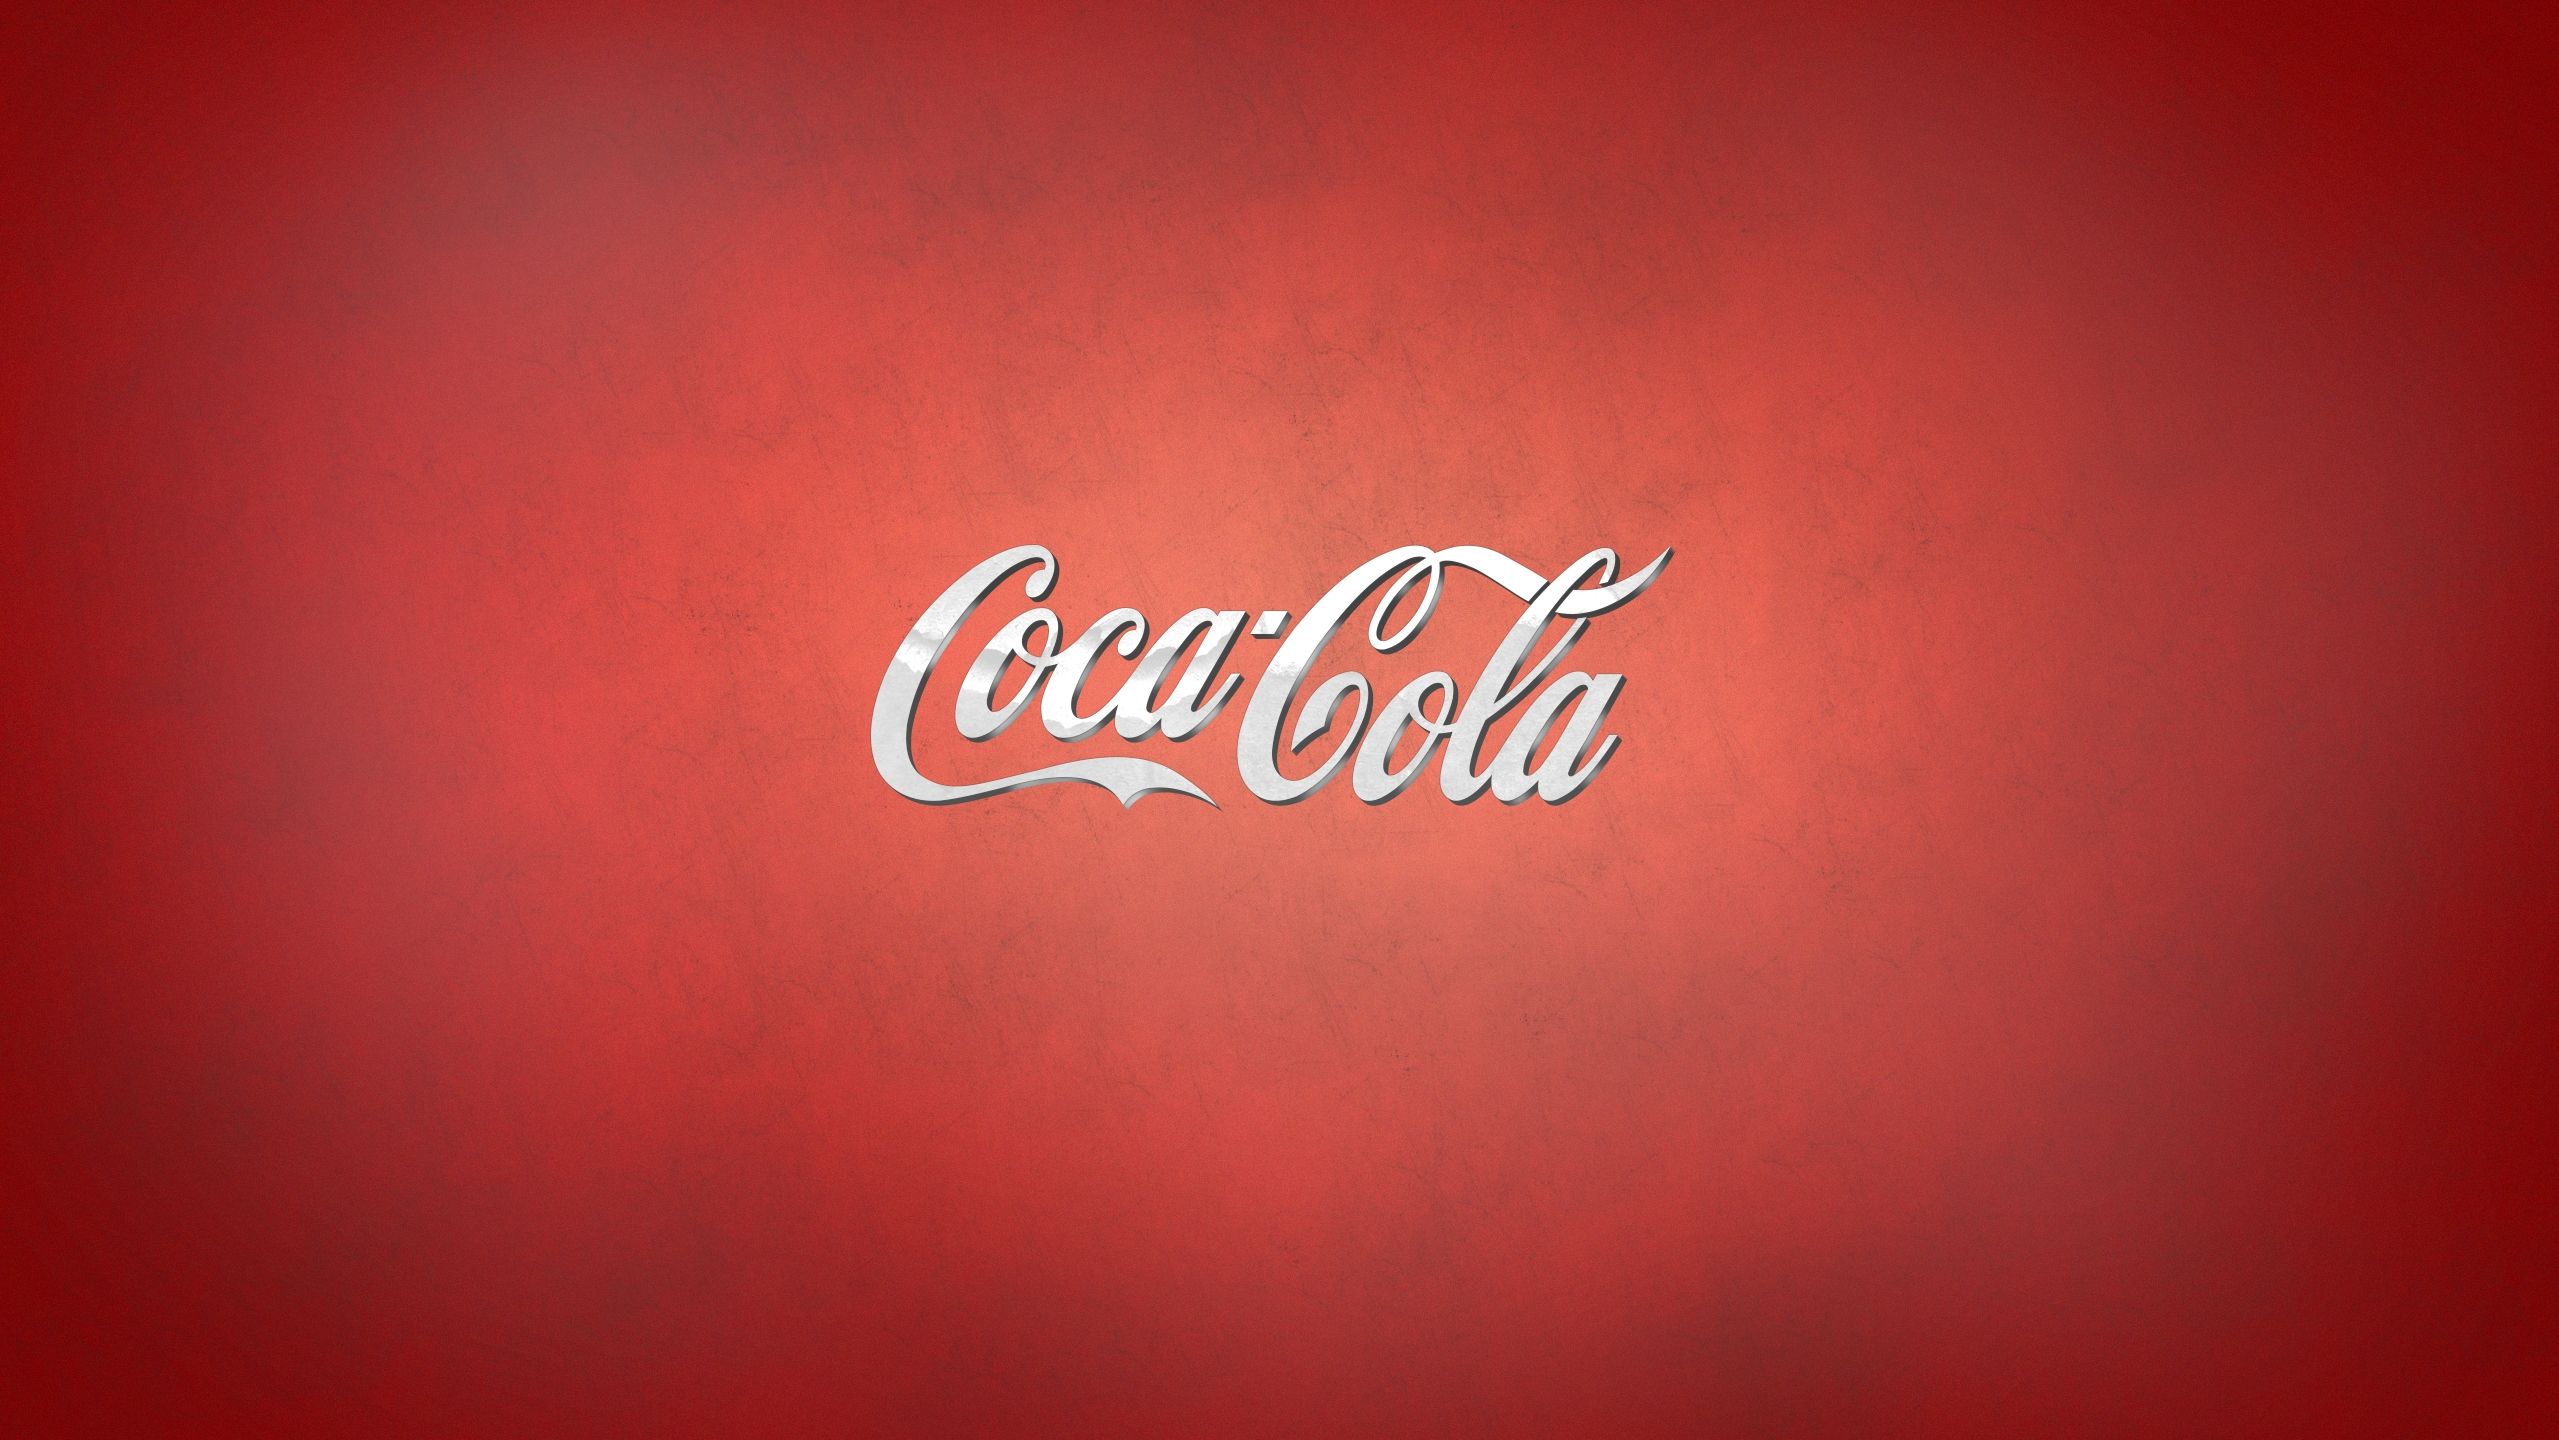 Coca cola Wallpaper